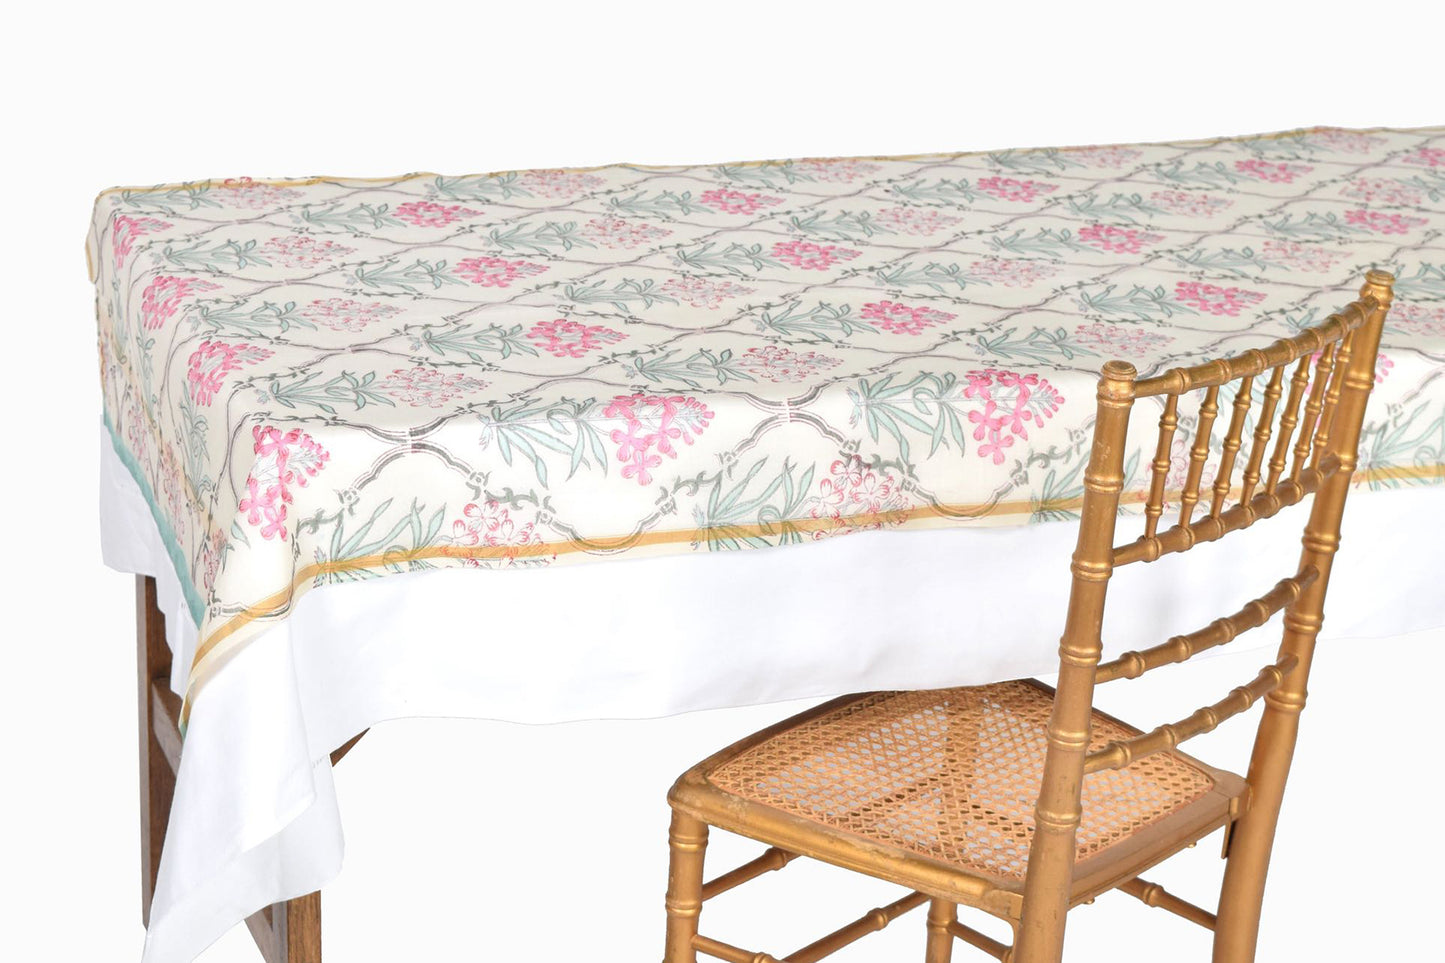 Bloc chemin de table en coton imprimé fleurs turquoise et roses TR6 